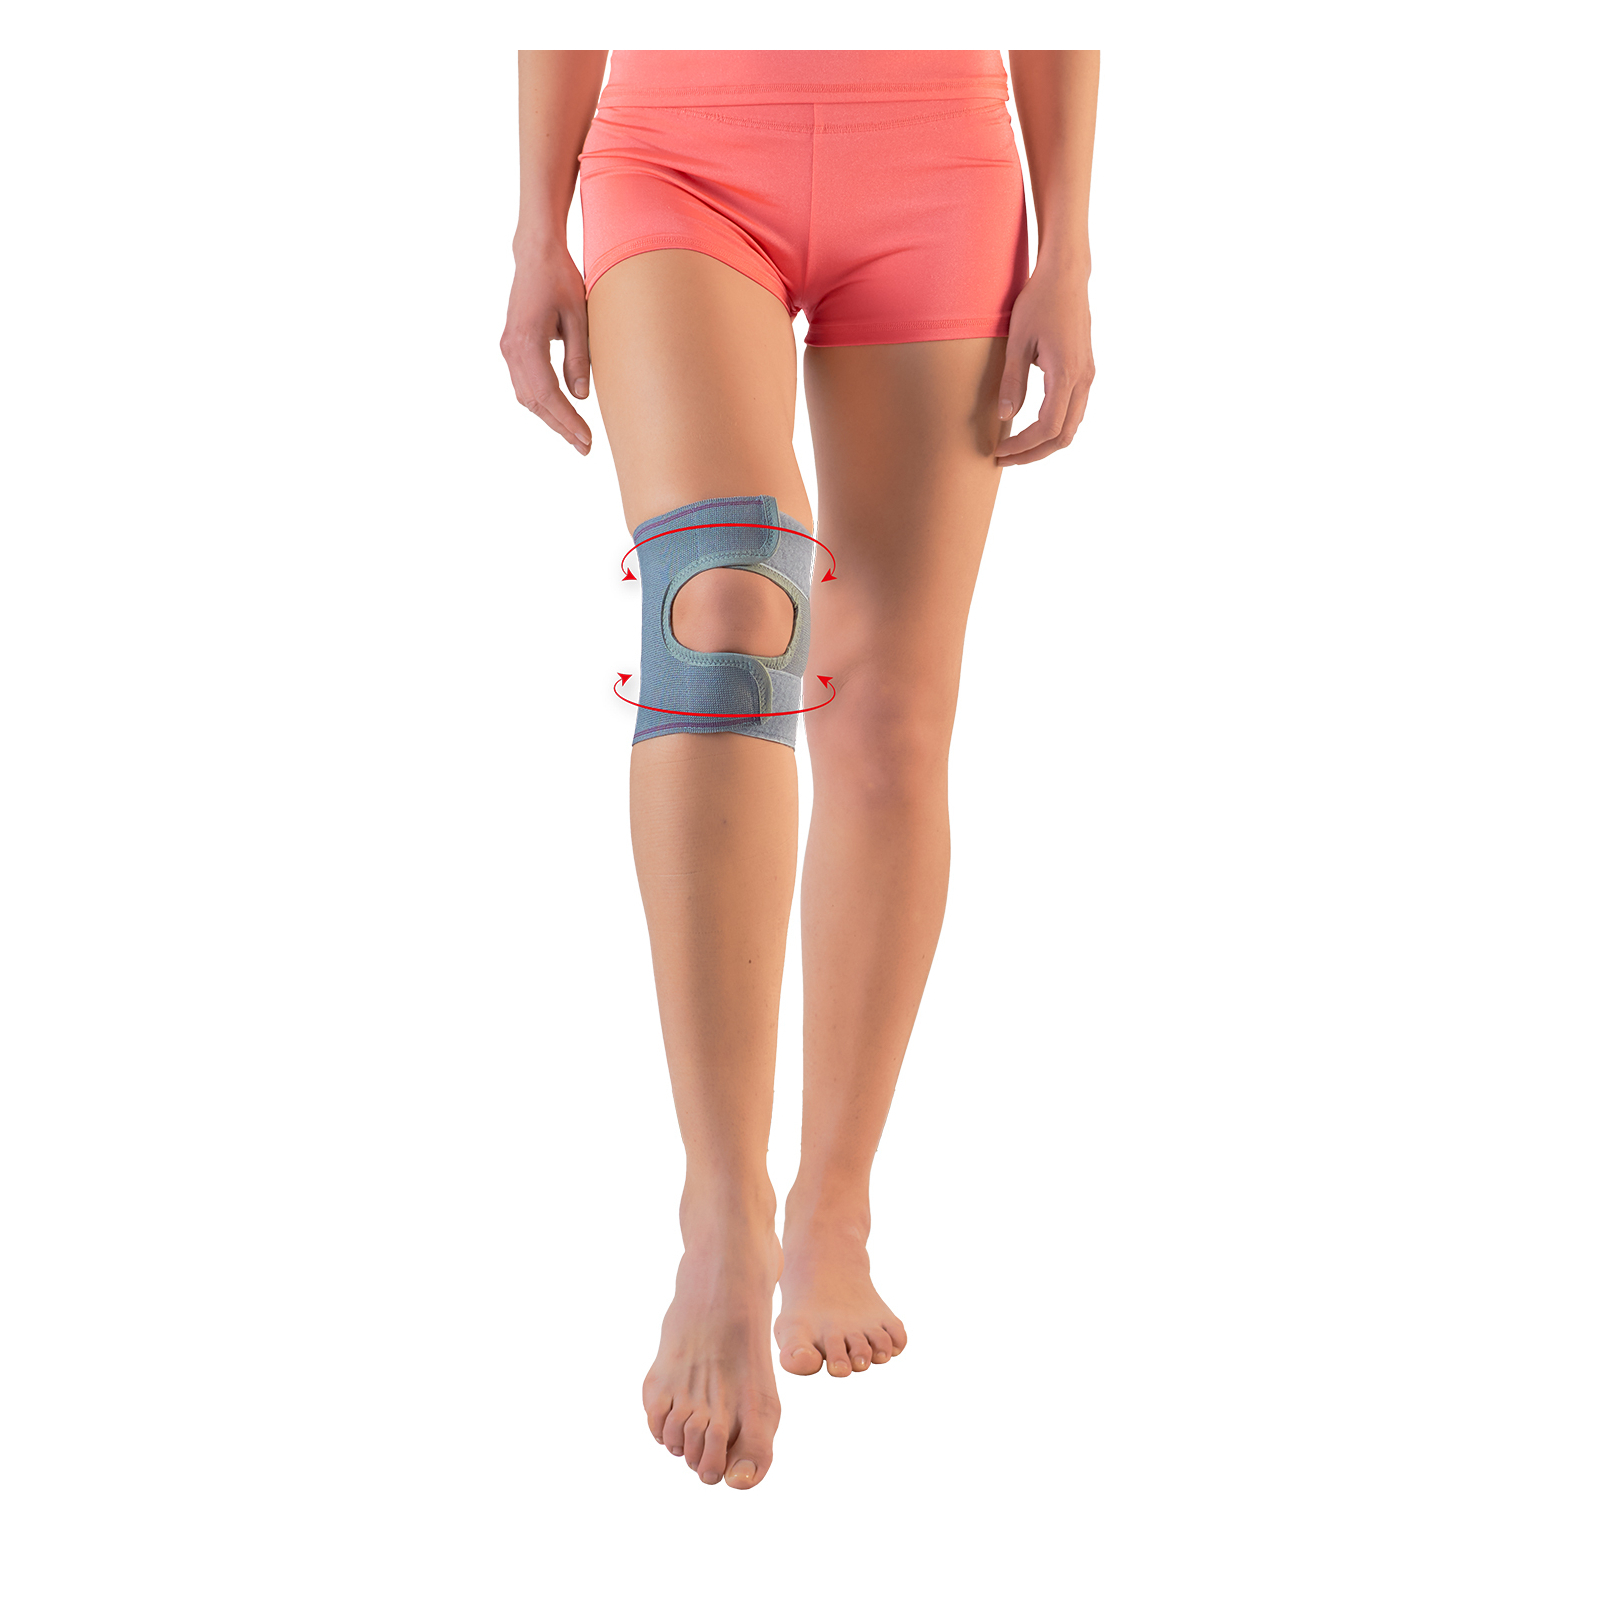 Бандаж 2В Бандаж на колінний суглоб, 2В, розмір Lшт (4820137299025) изображение 2